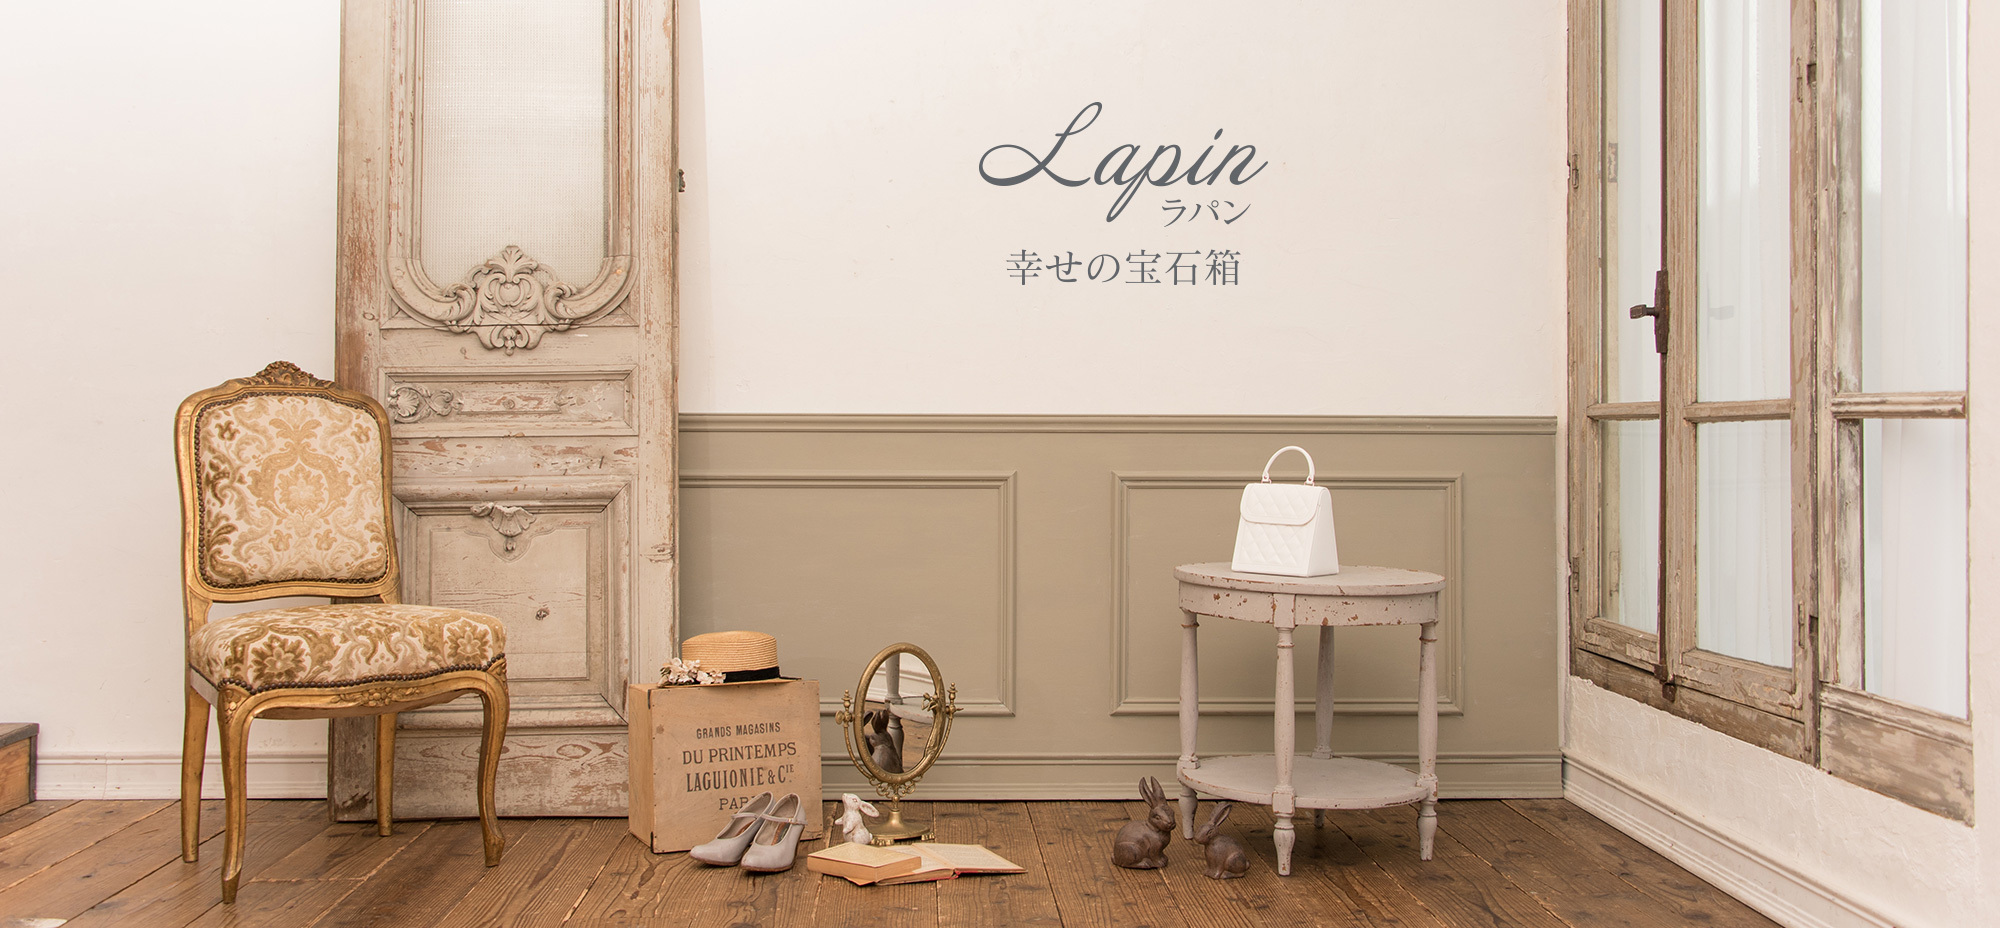 理想の暮らし パリのアパルトマンをイメージ 宝石箱をはじめとしたギフトが見つかる専門店 Lapin 幸せの宝石箱 が11 4 Open 茶谷産業株式会社のプレスリリース